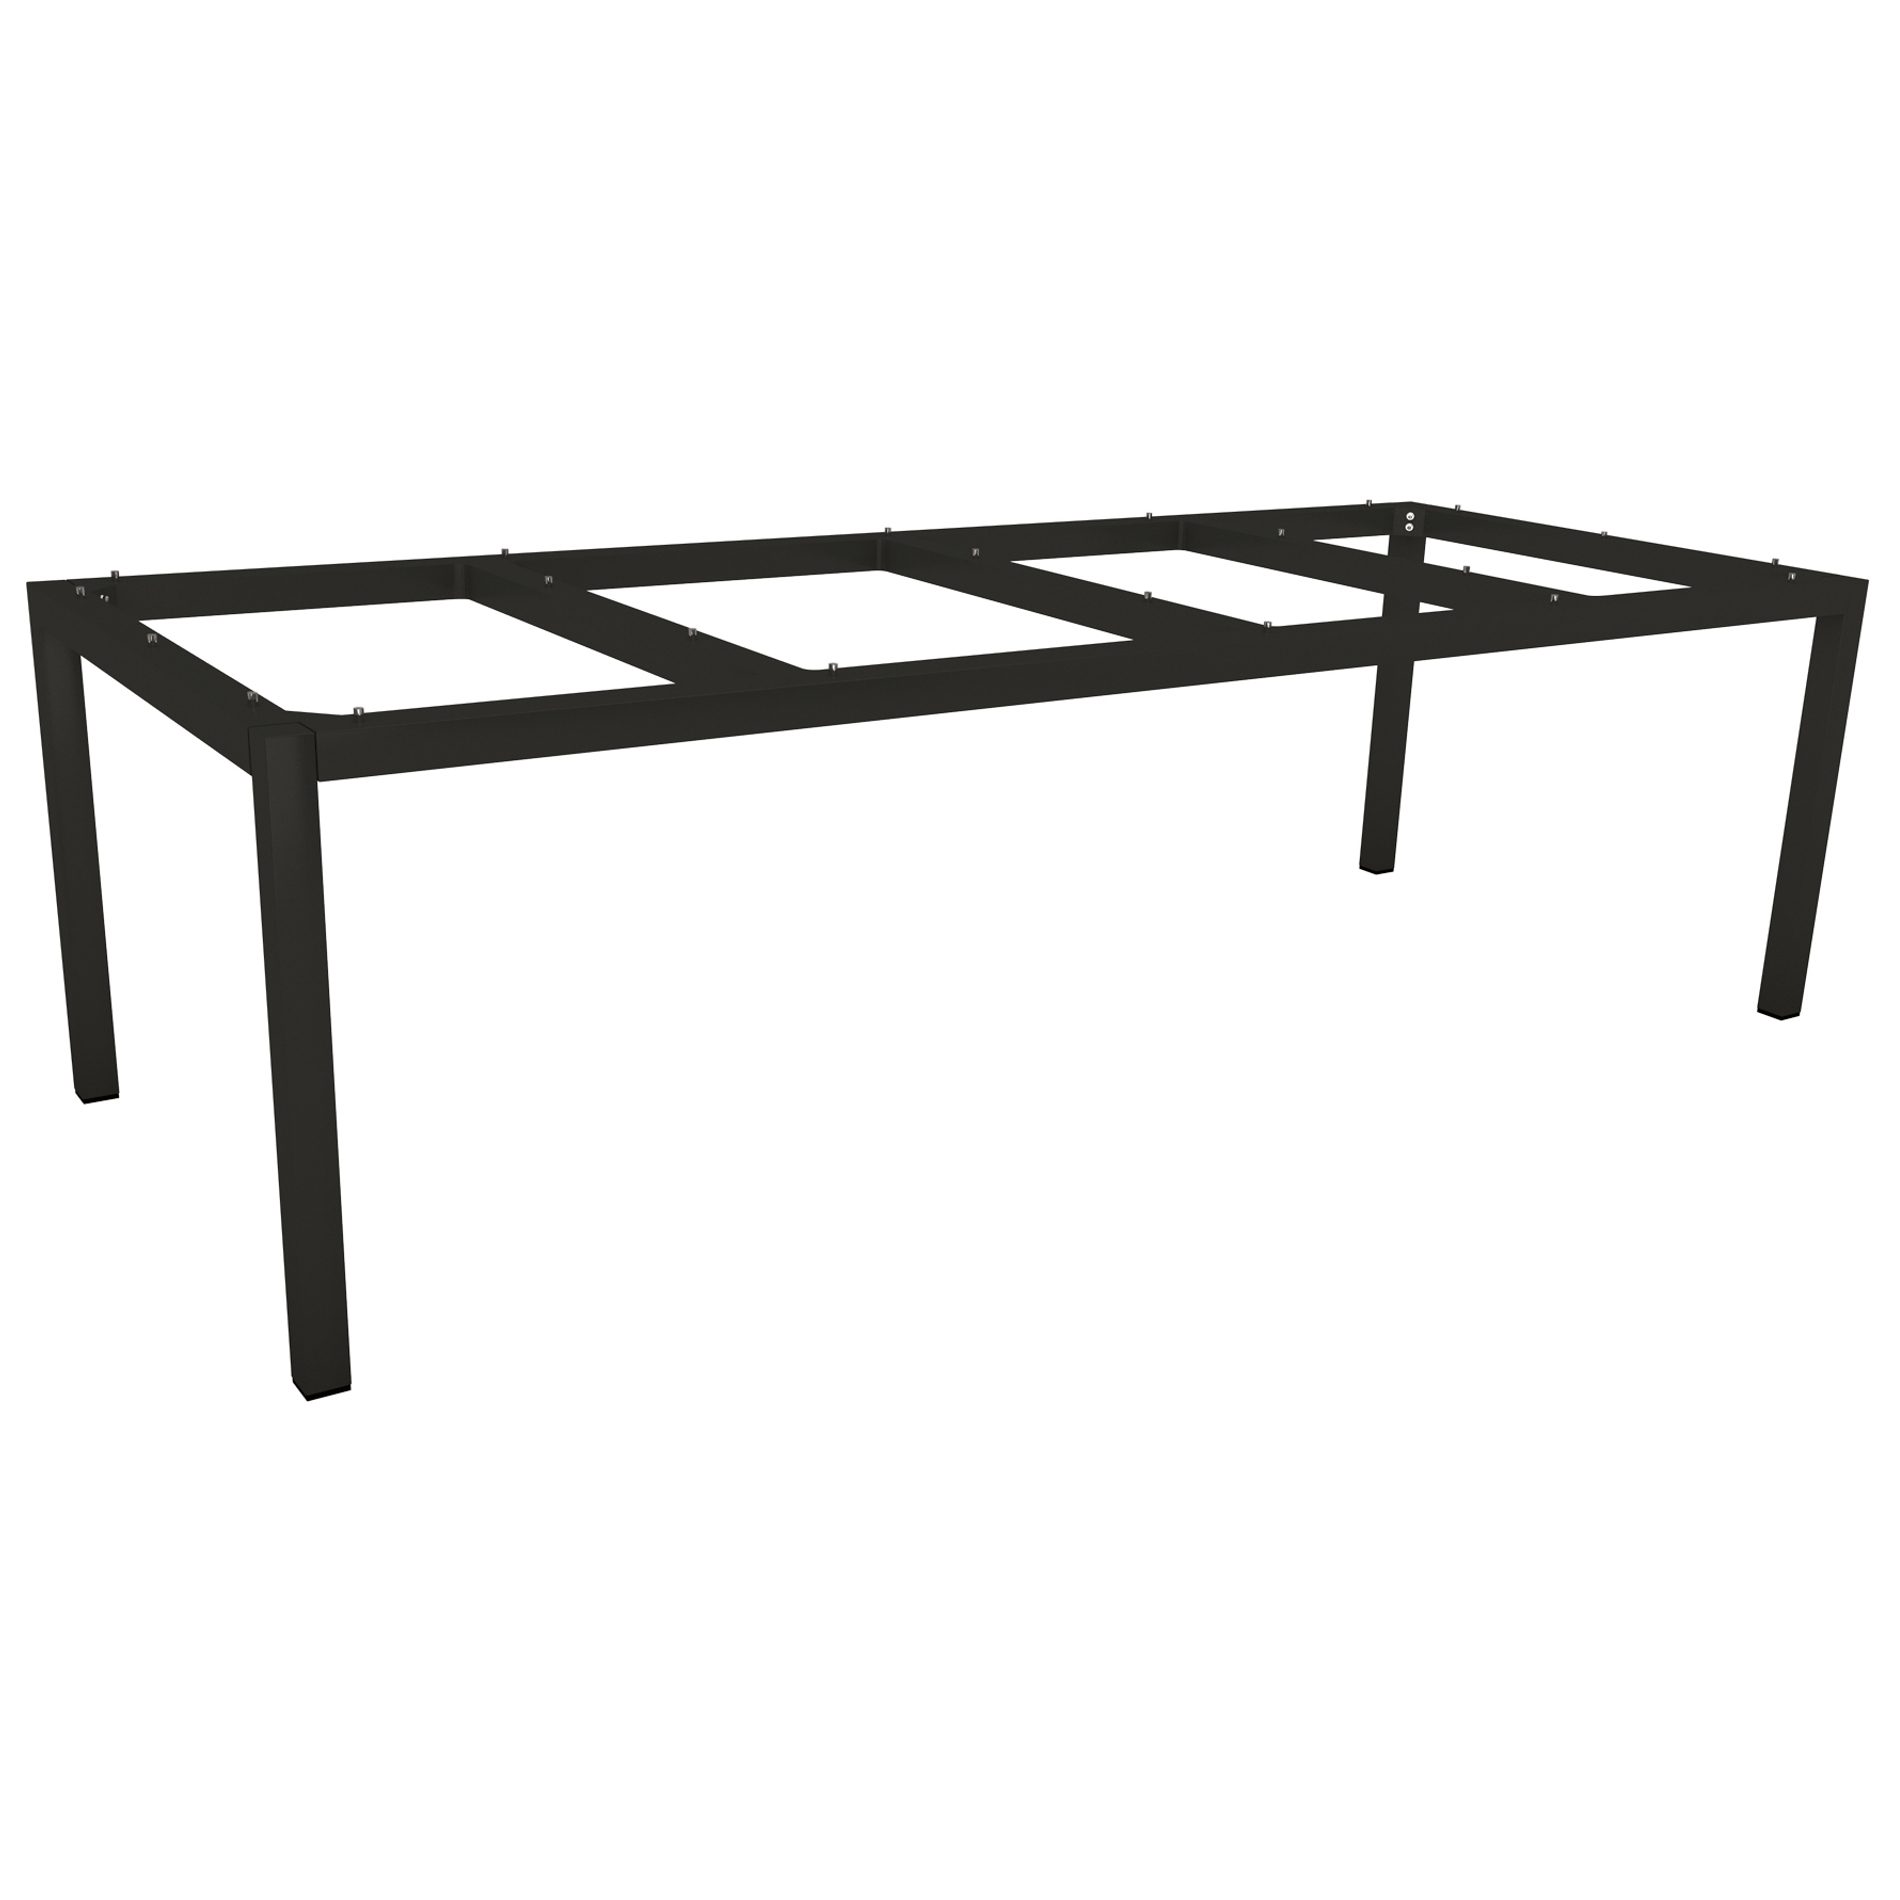 Stern Tischgestell Aluminium schwarz matt, 250x100 cm